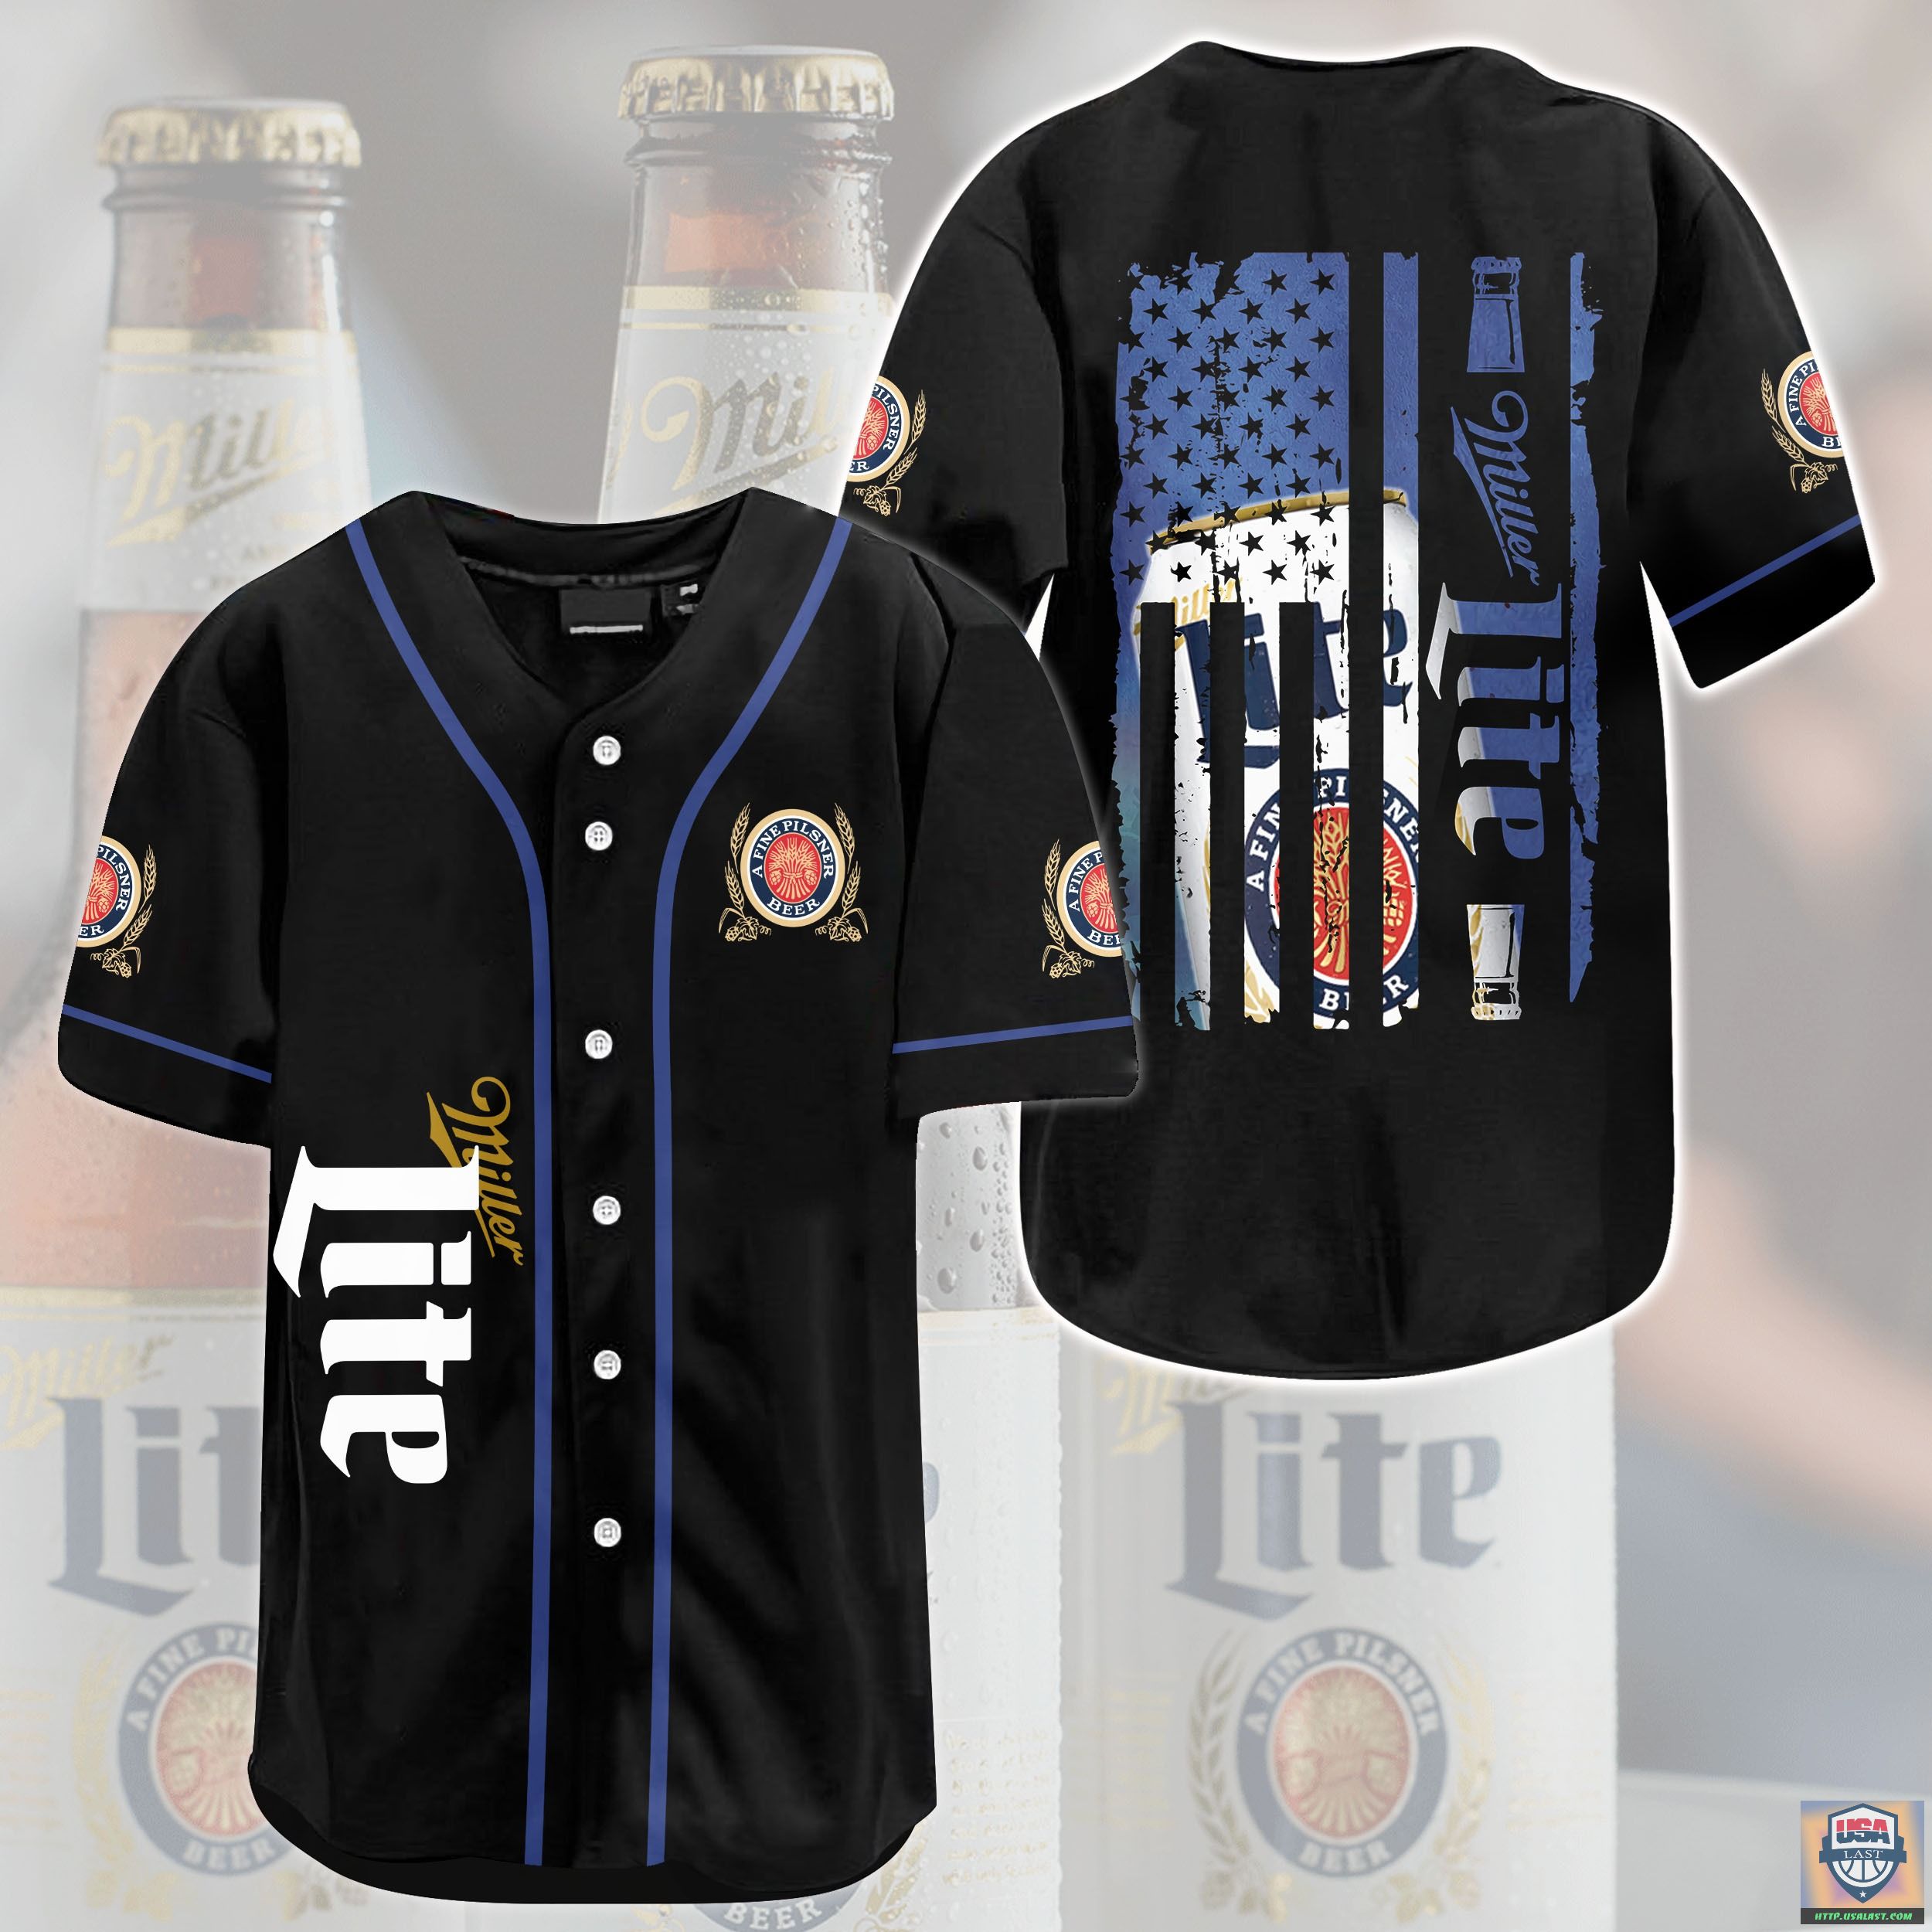 Miller Lite U.S Flag Baseball Jersey Shirt – Usalast